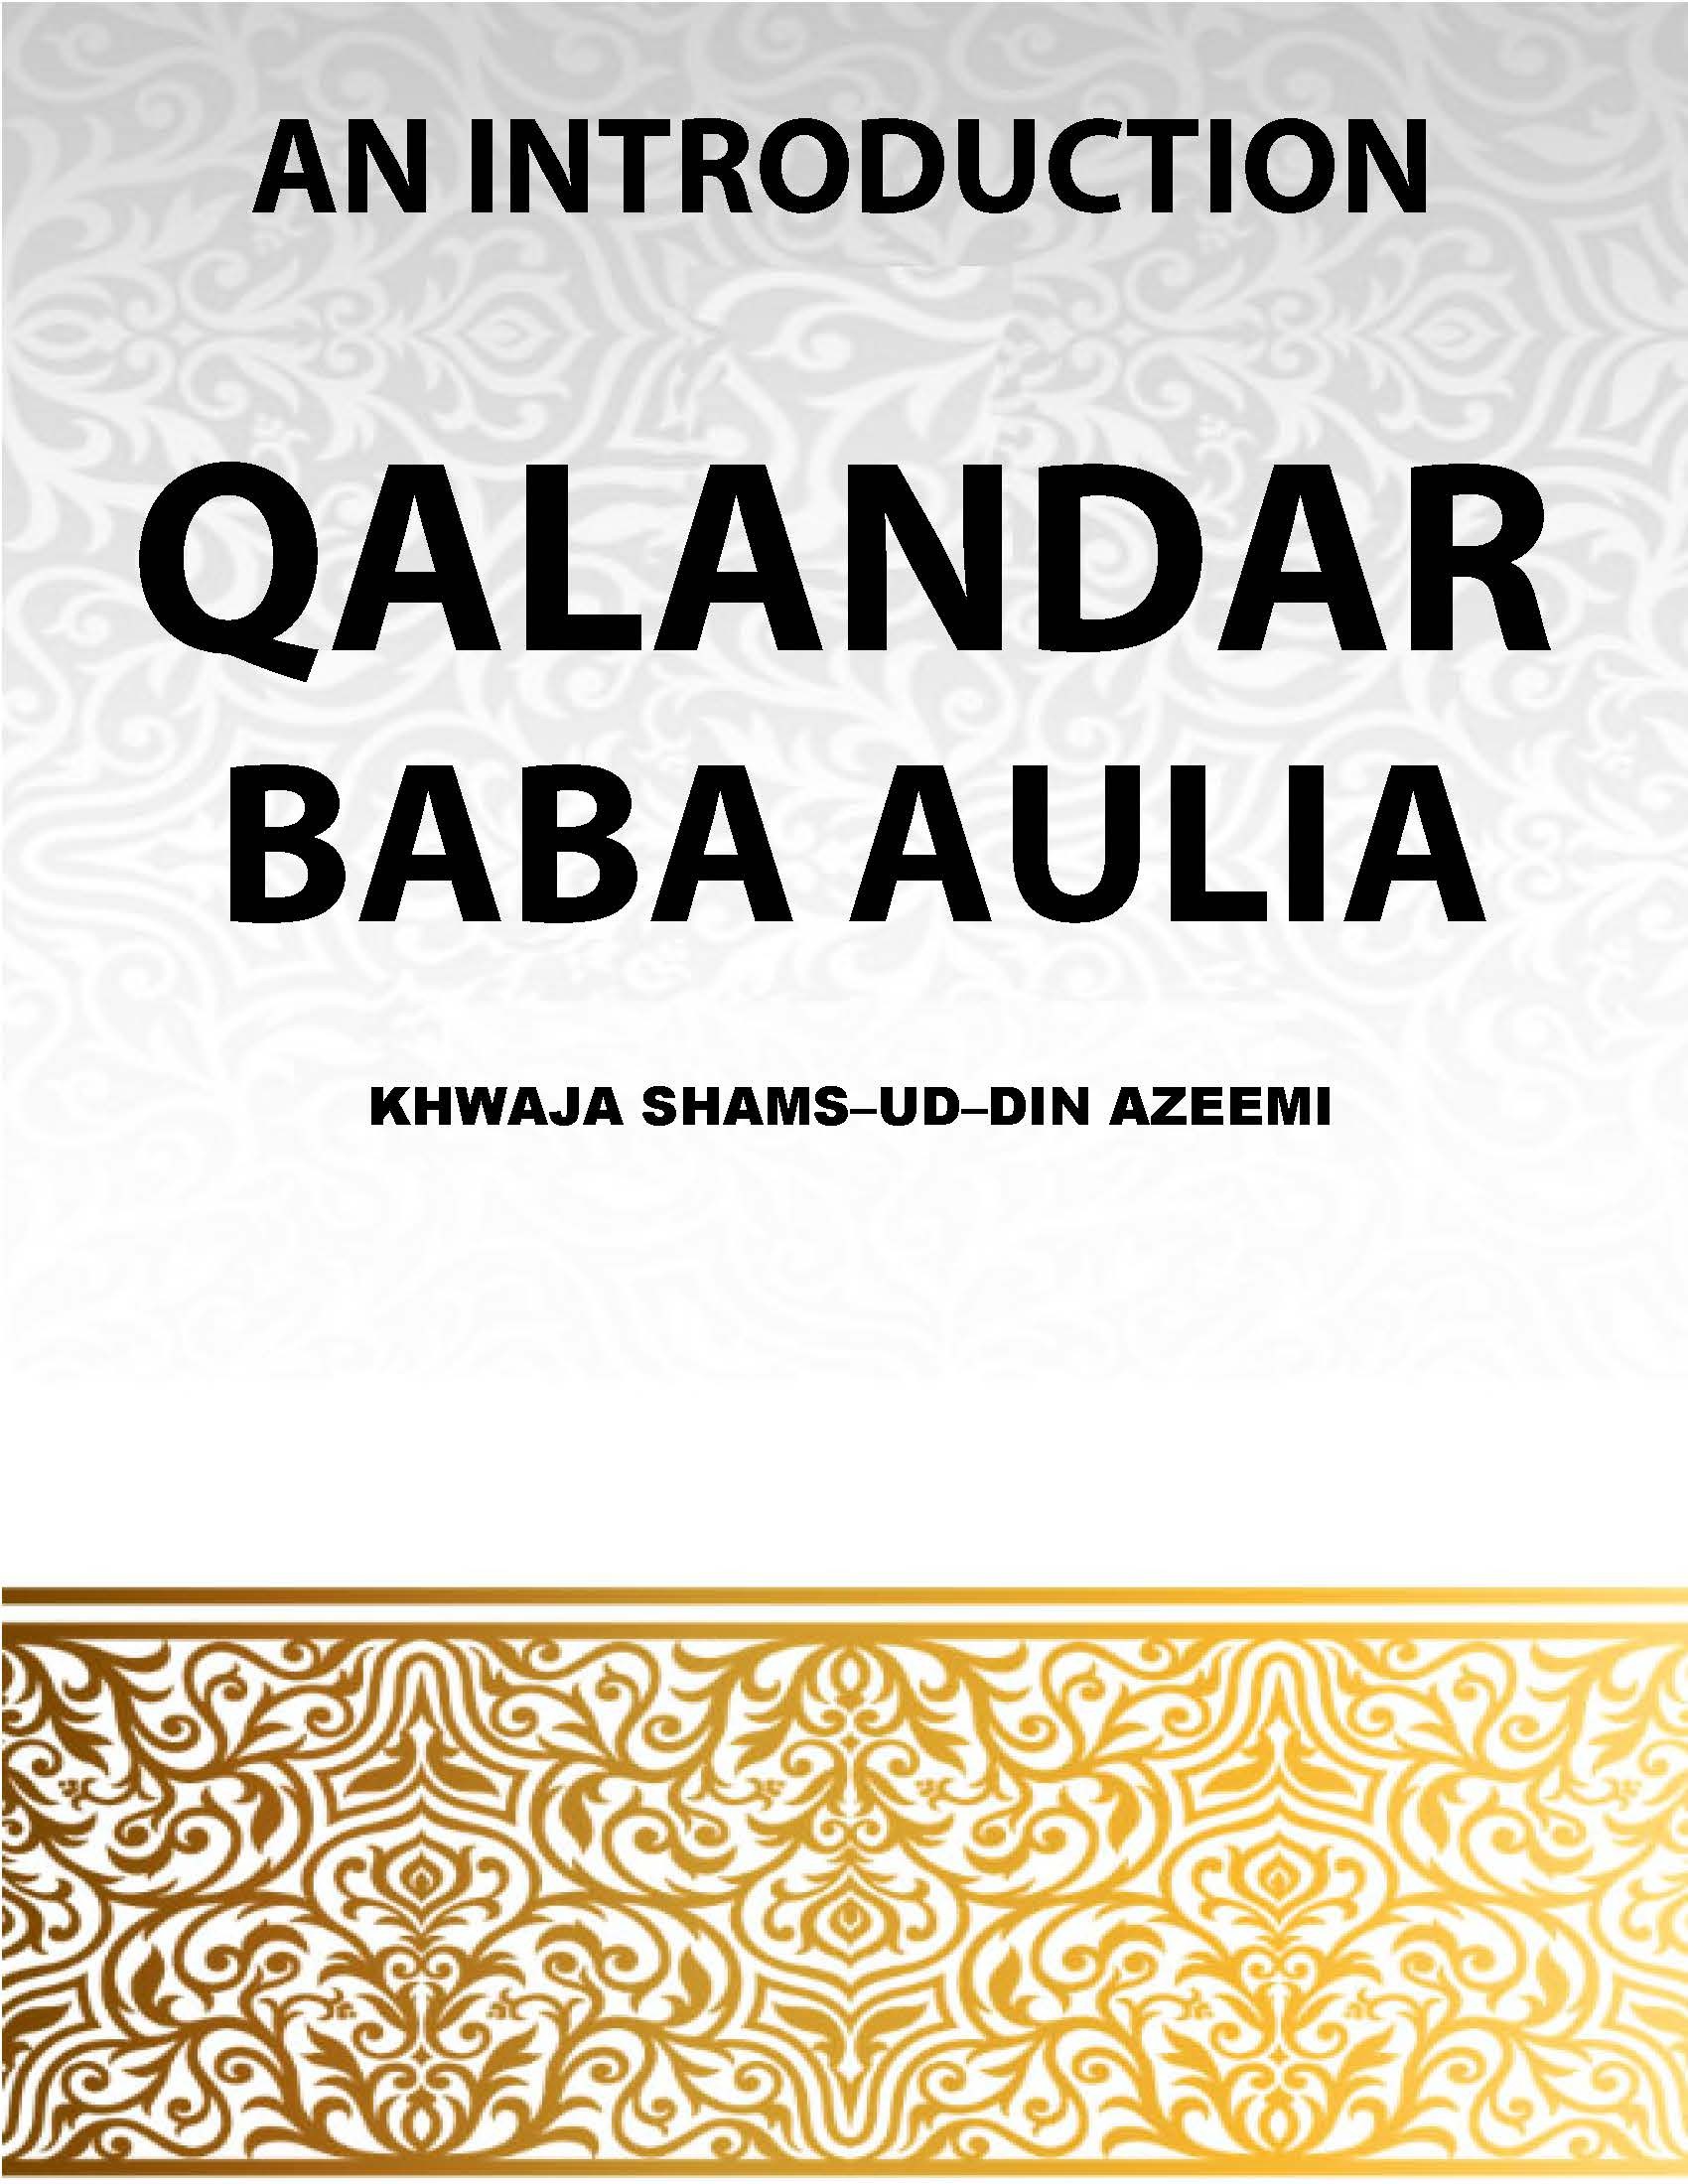 Qalander Baba Auliya - An Introduction